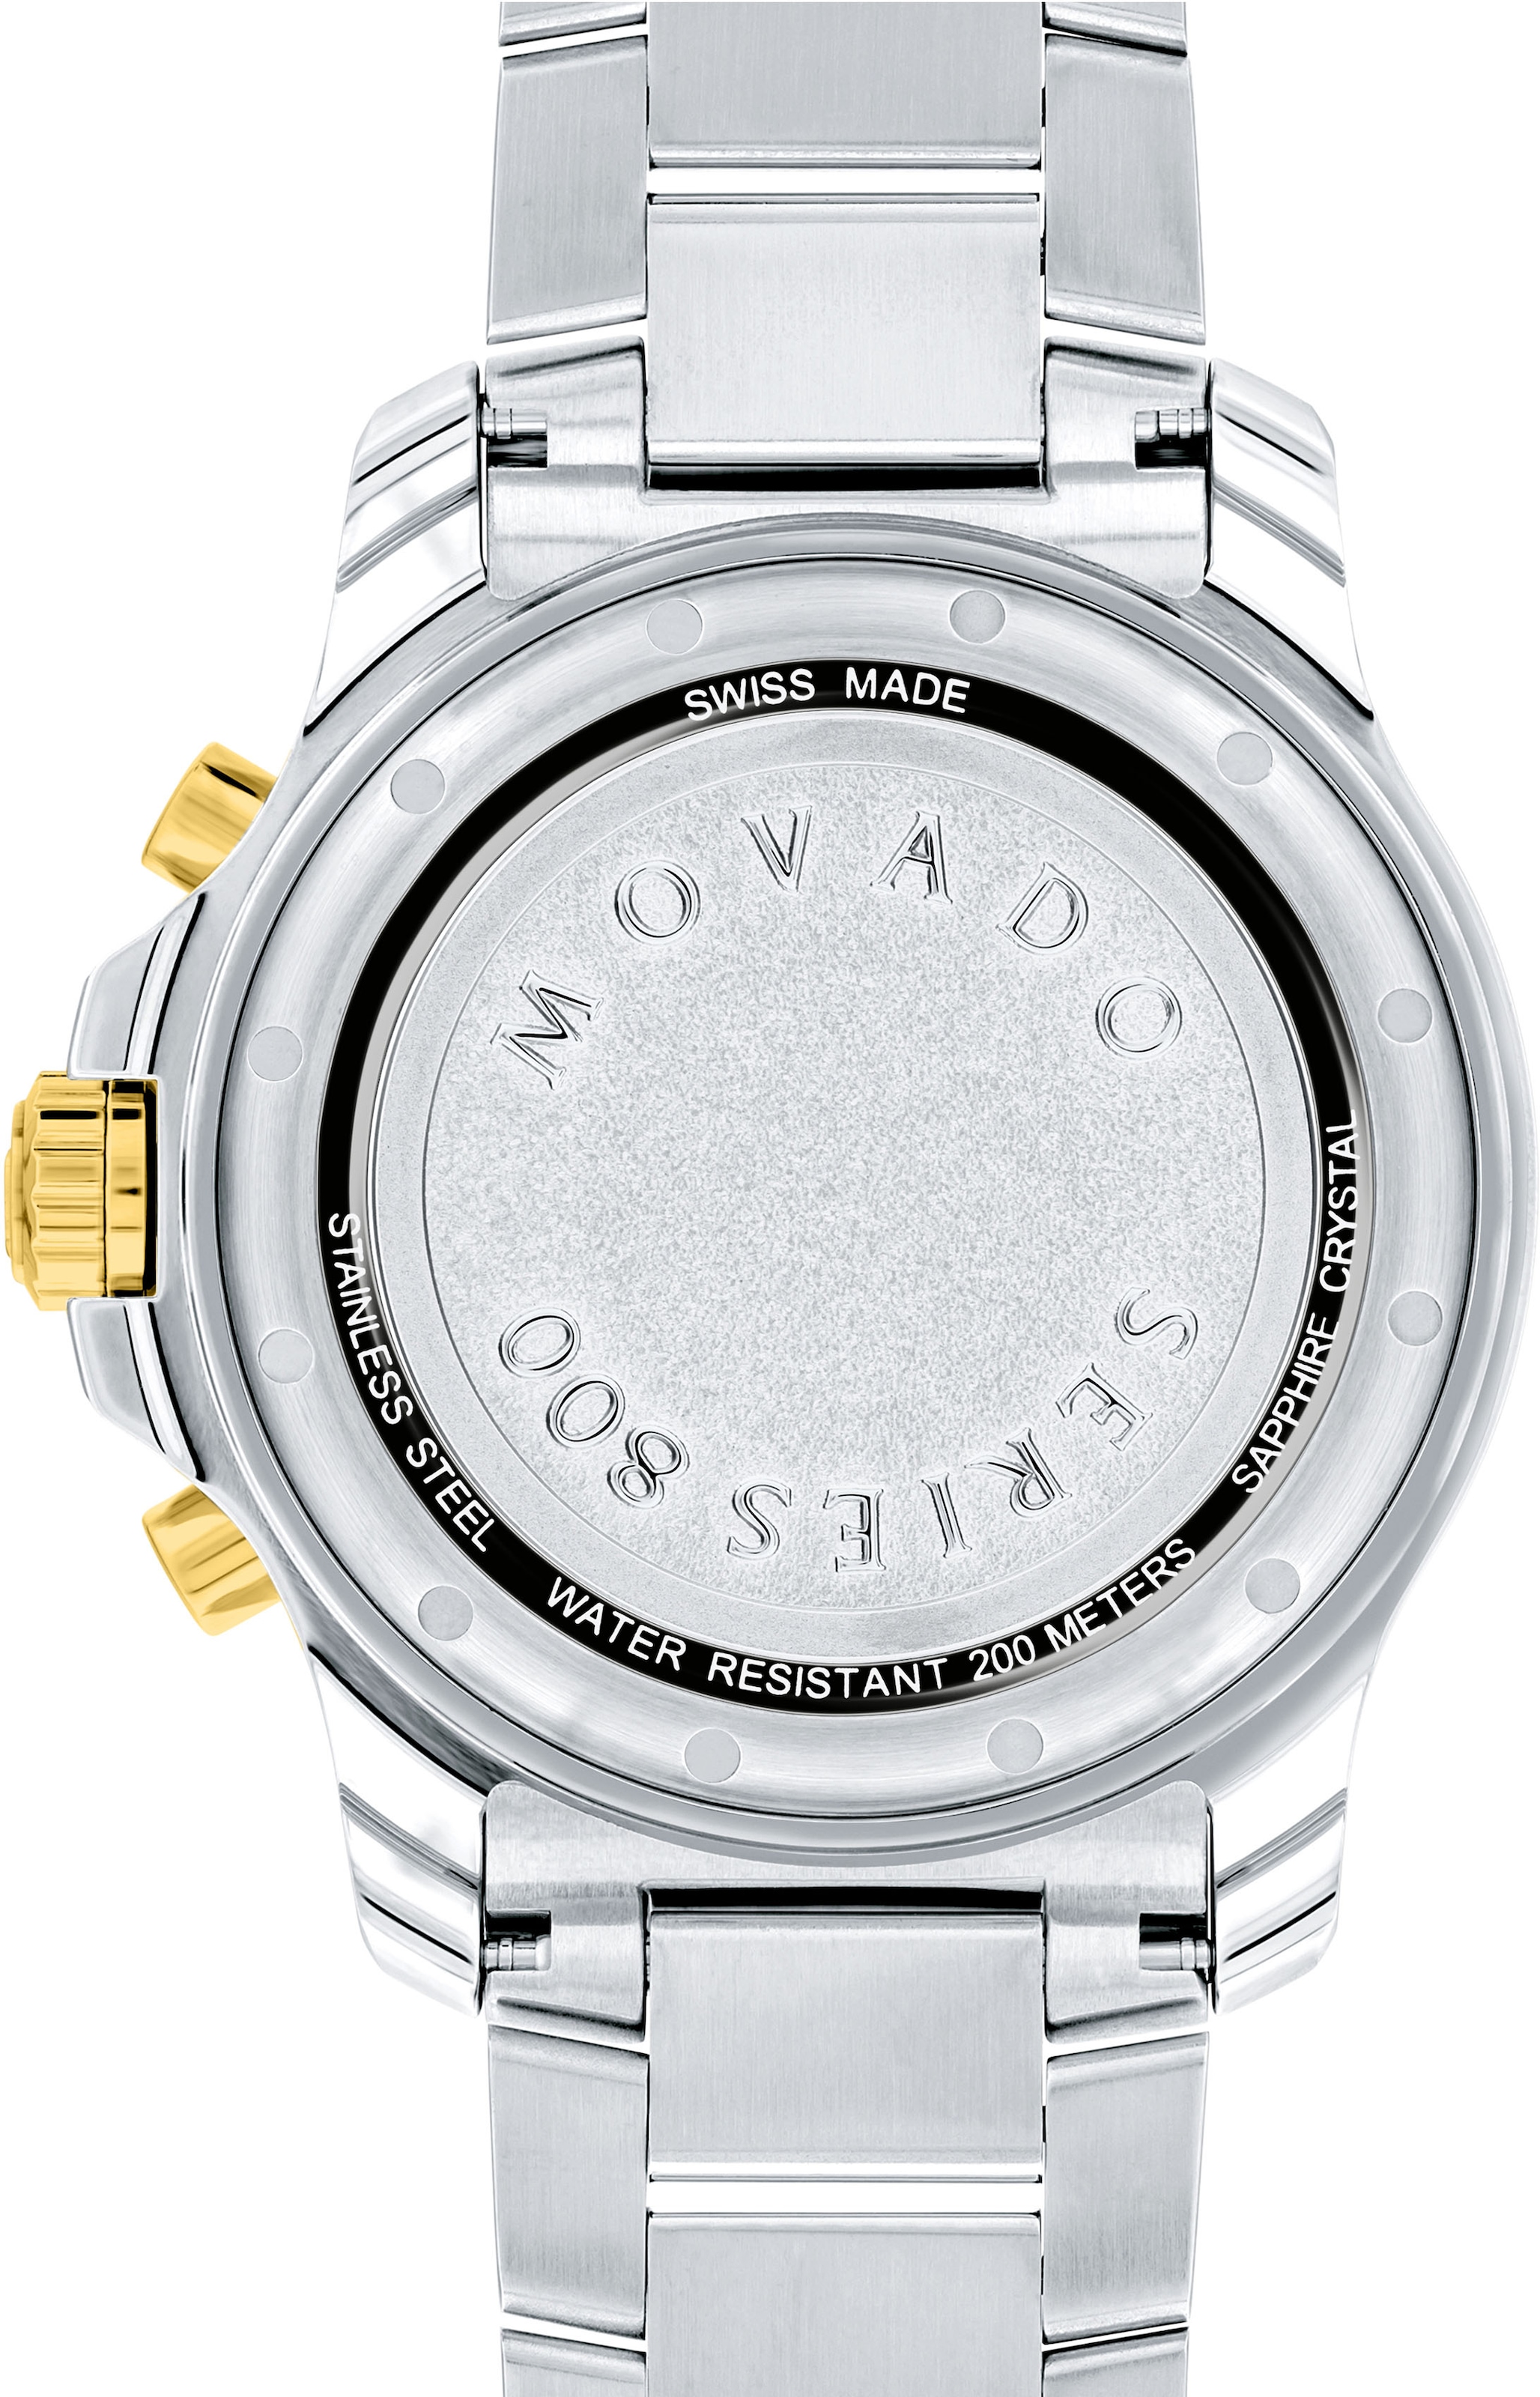 MOVADO Chronograph »Series 800, 2600146«, Quarzuhr, Armbanduhr, Herrenuhr, Swiss Made, Datum, bicolor